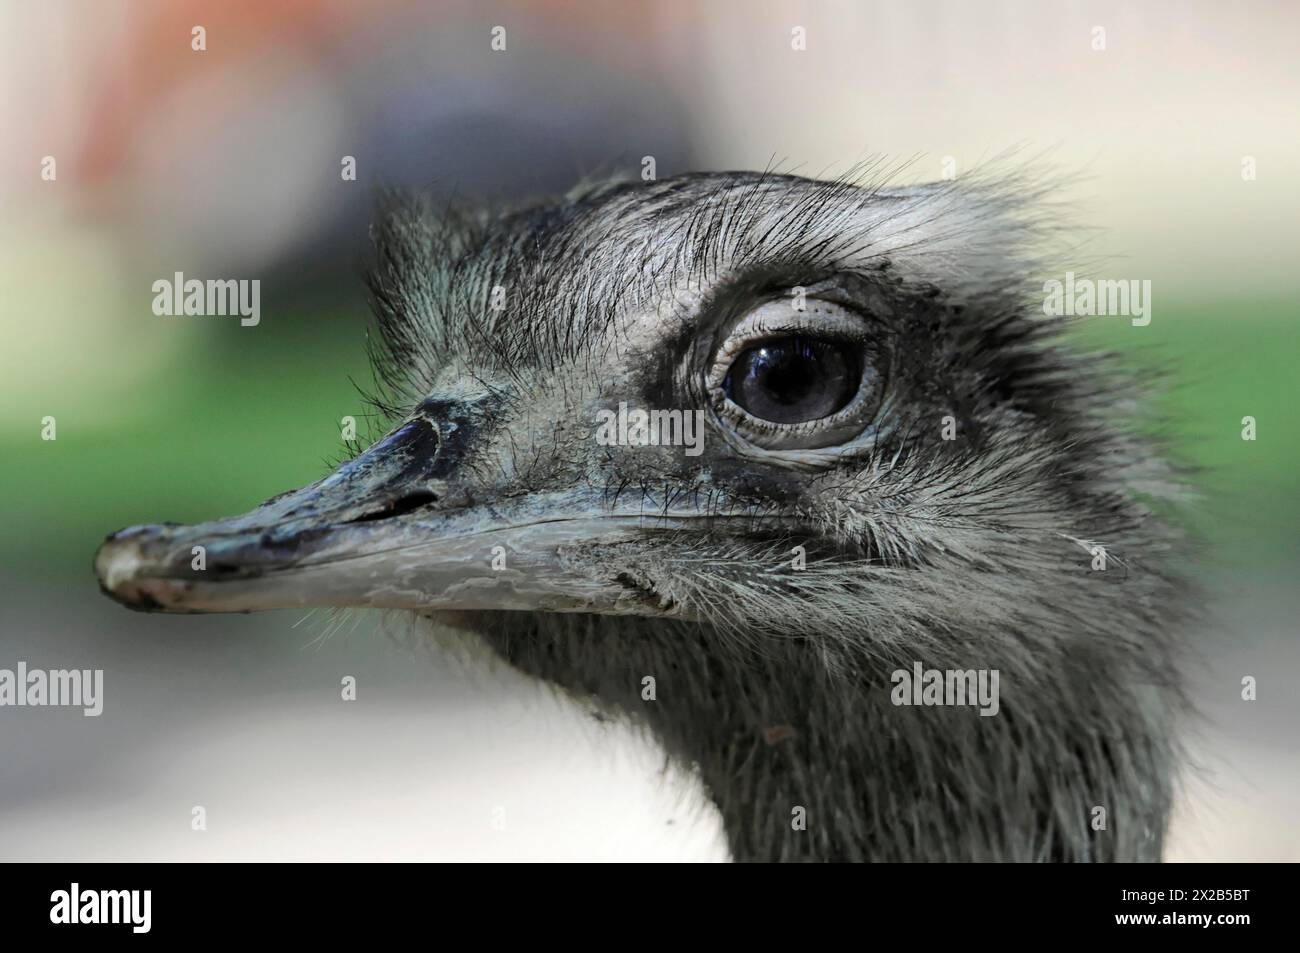 Emu (Dromaius novaehollandiae), im Zoo, Bayern, Porträt einer emu, gefangen, Nahaufnahme eines Straußenkopfes mit Augenfokus, Zoo, Bayern, Ger Stockfoto